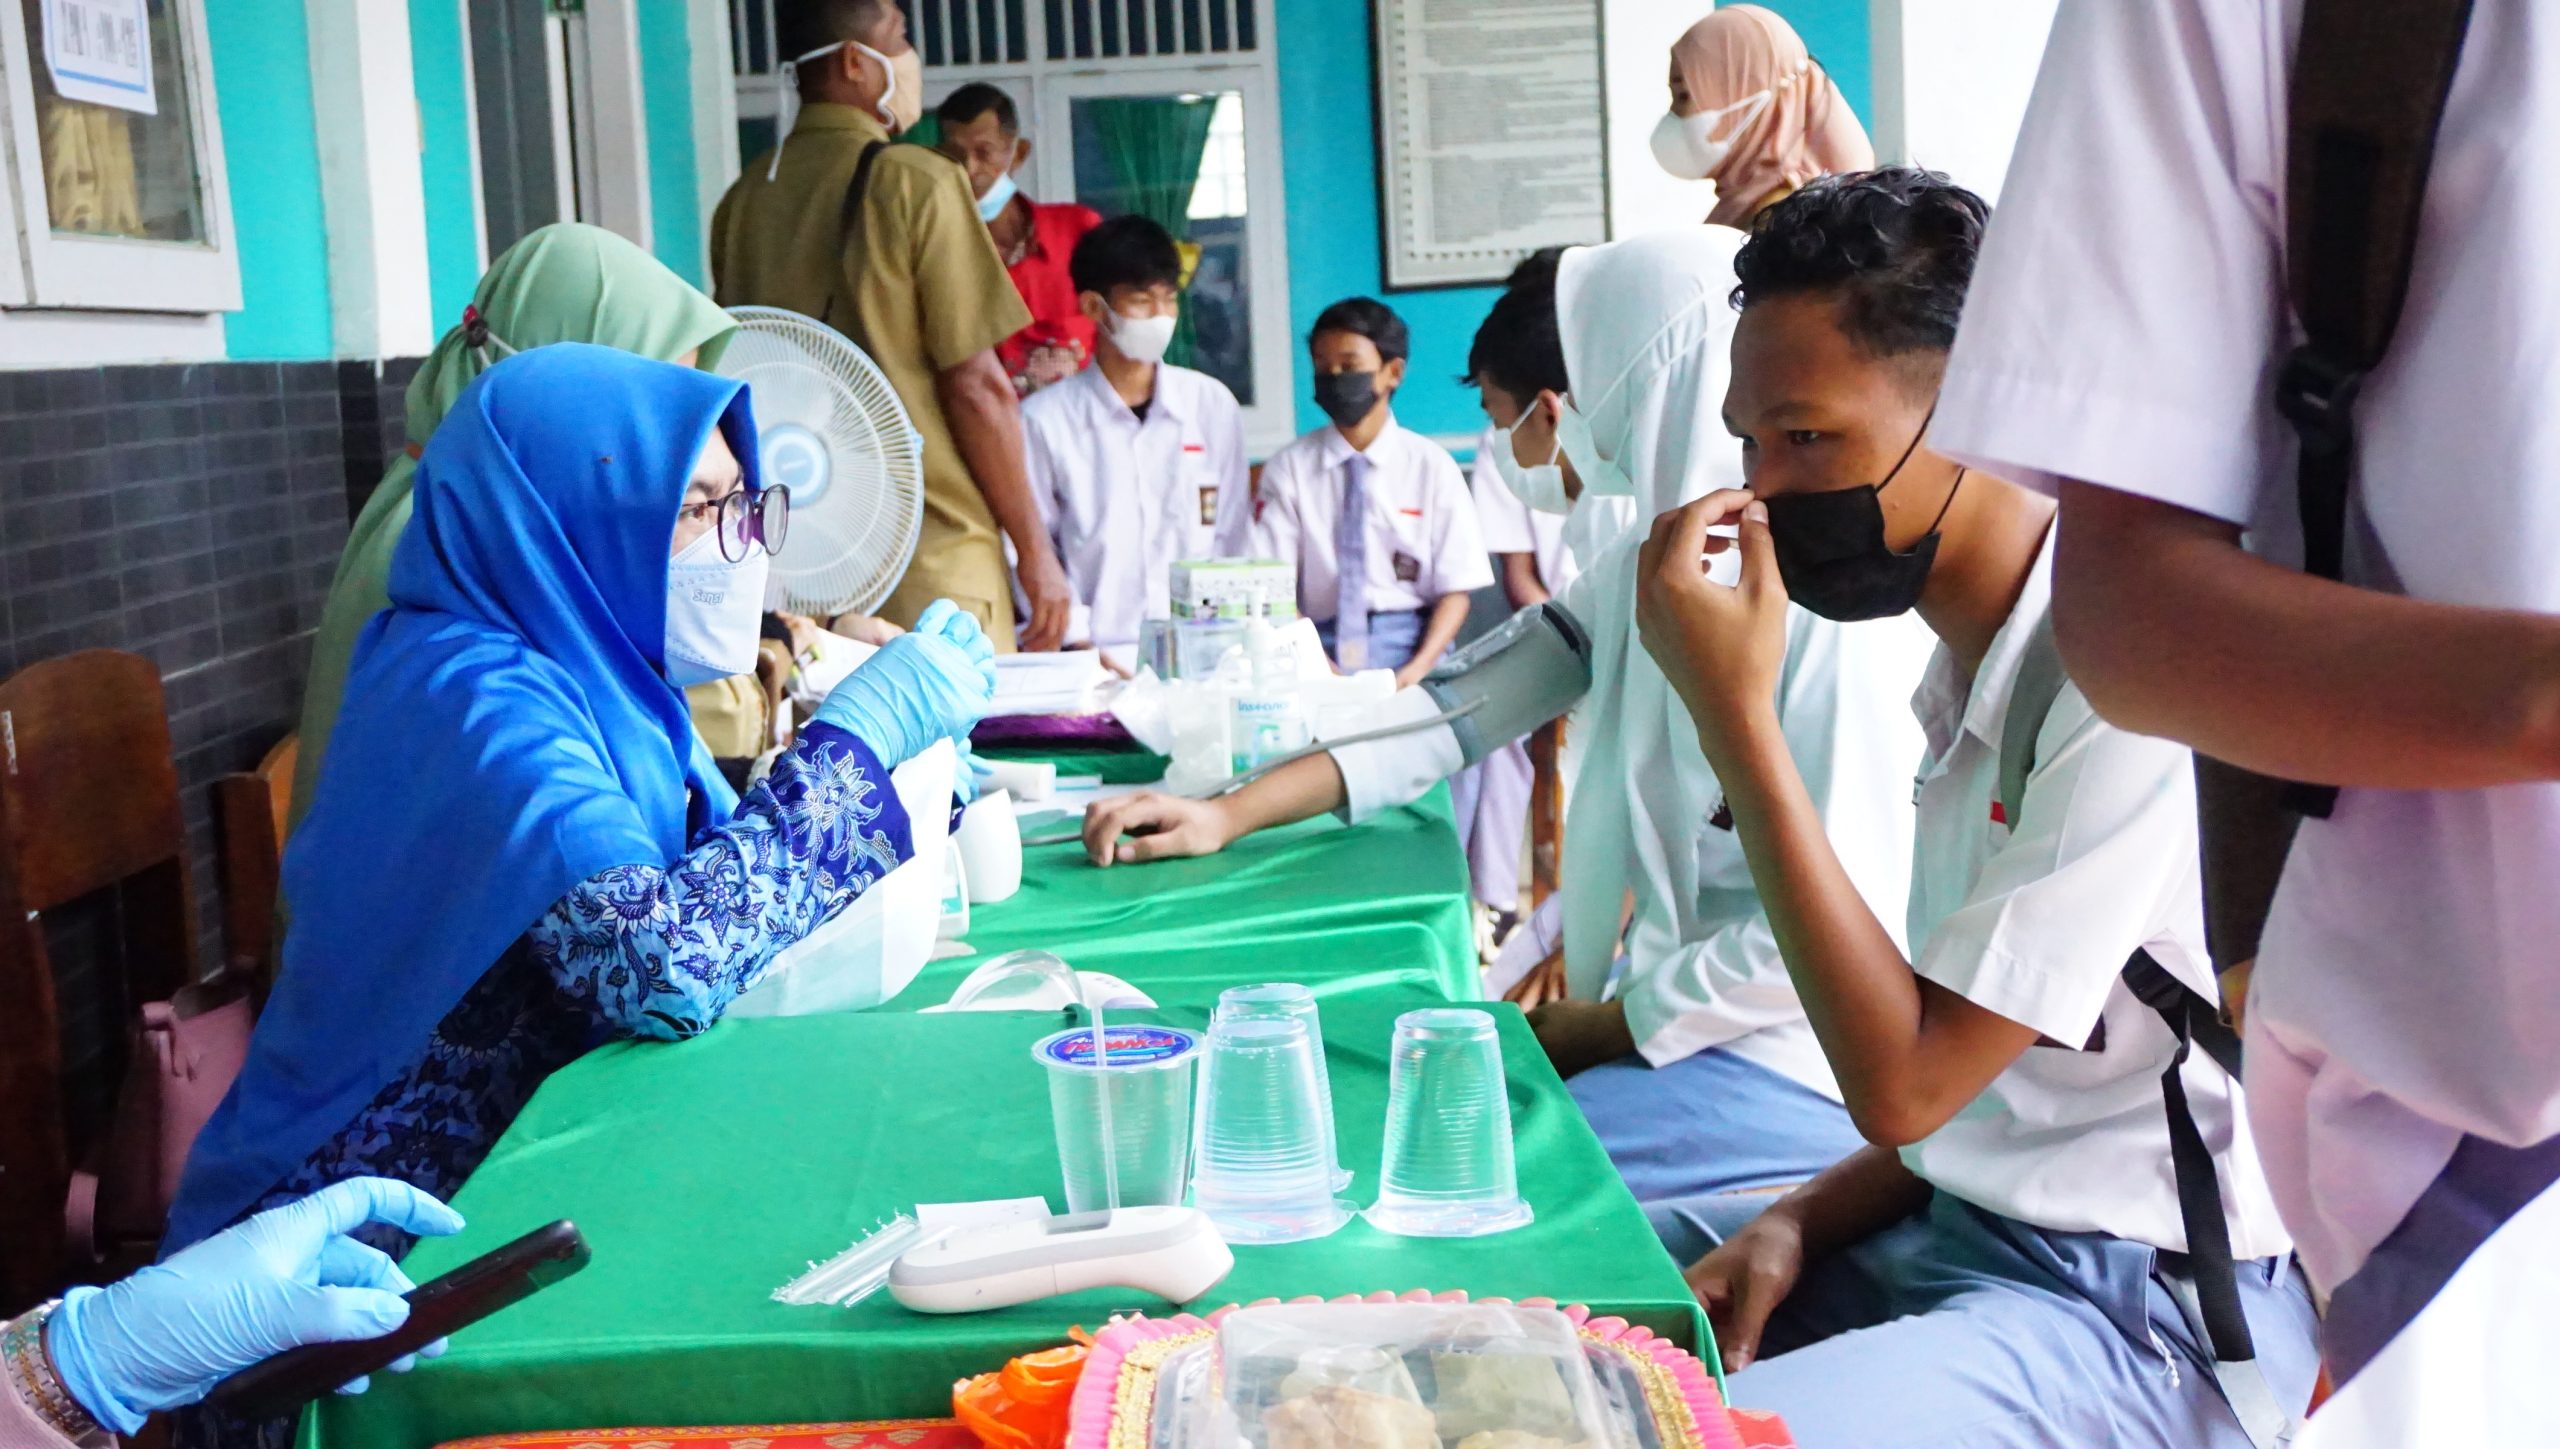 UPT Puskesmas Karang Anyar Adakan 1000 Suntik Vaksin di SMK Amal Bakti Jatiagung